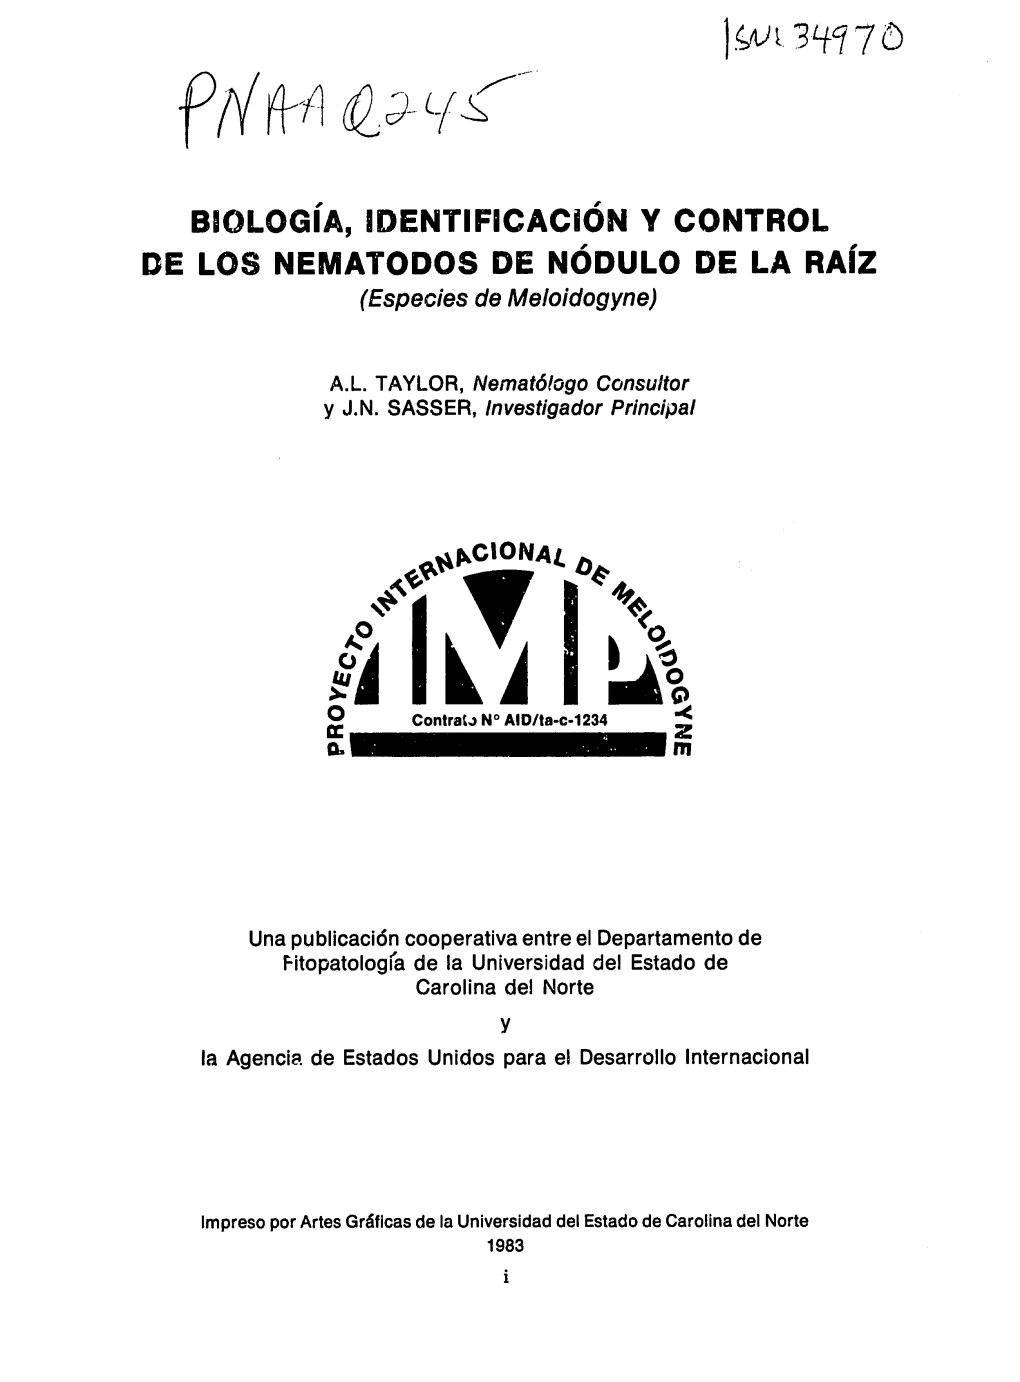 BIOLOGIA, IDENTIFICACION Y CONTROL DE LOS NEMATODOS DE NODULO DE LA RAIZ (Especies De Meloidogyne)